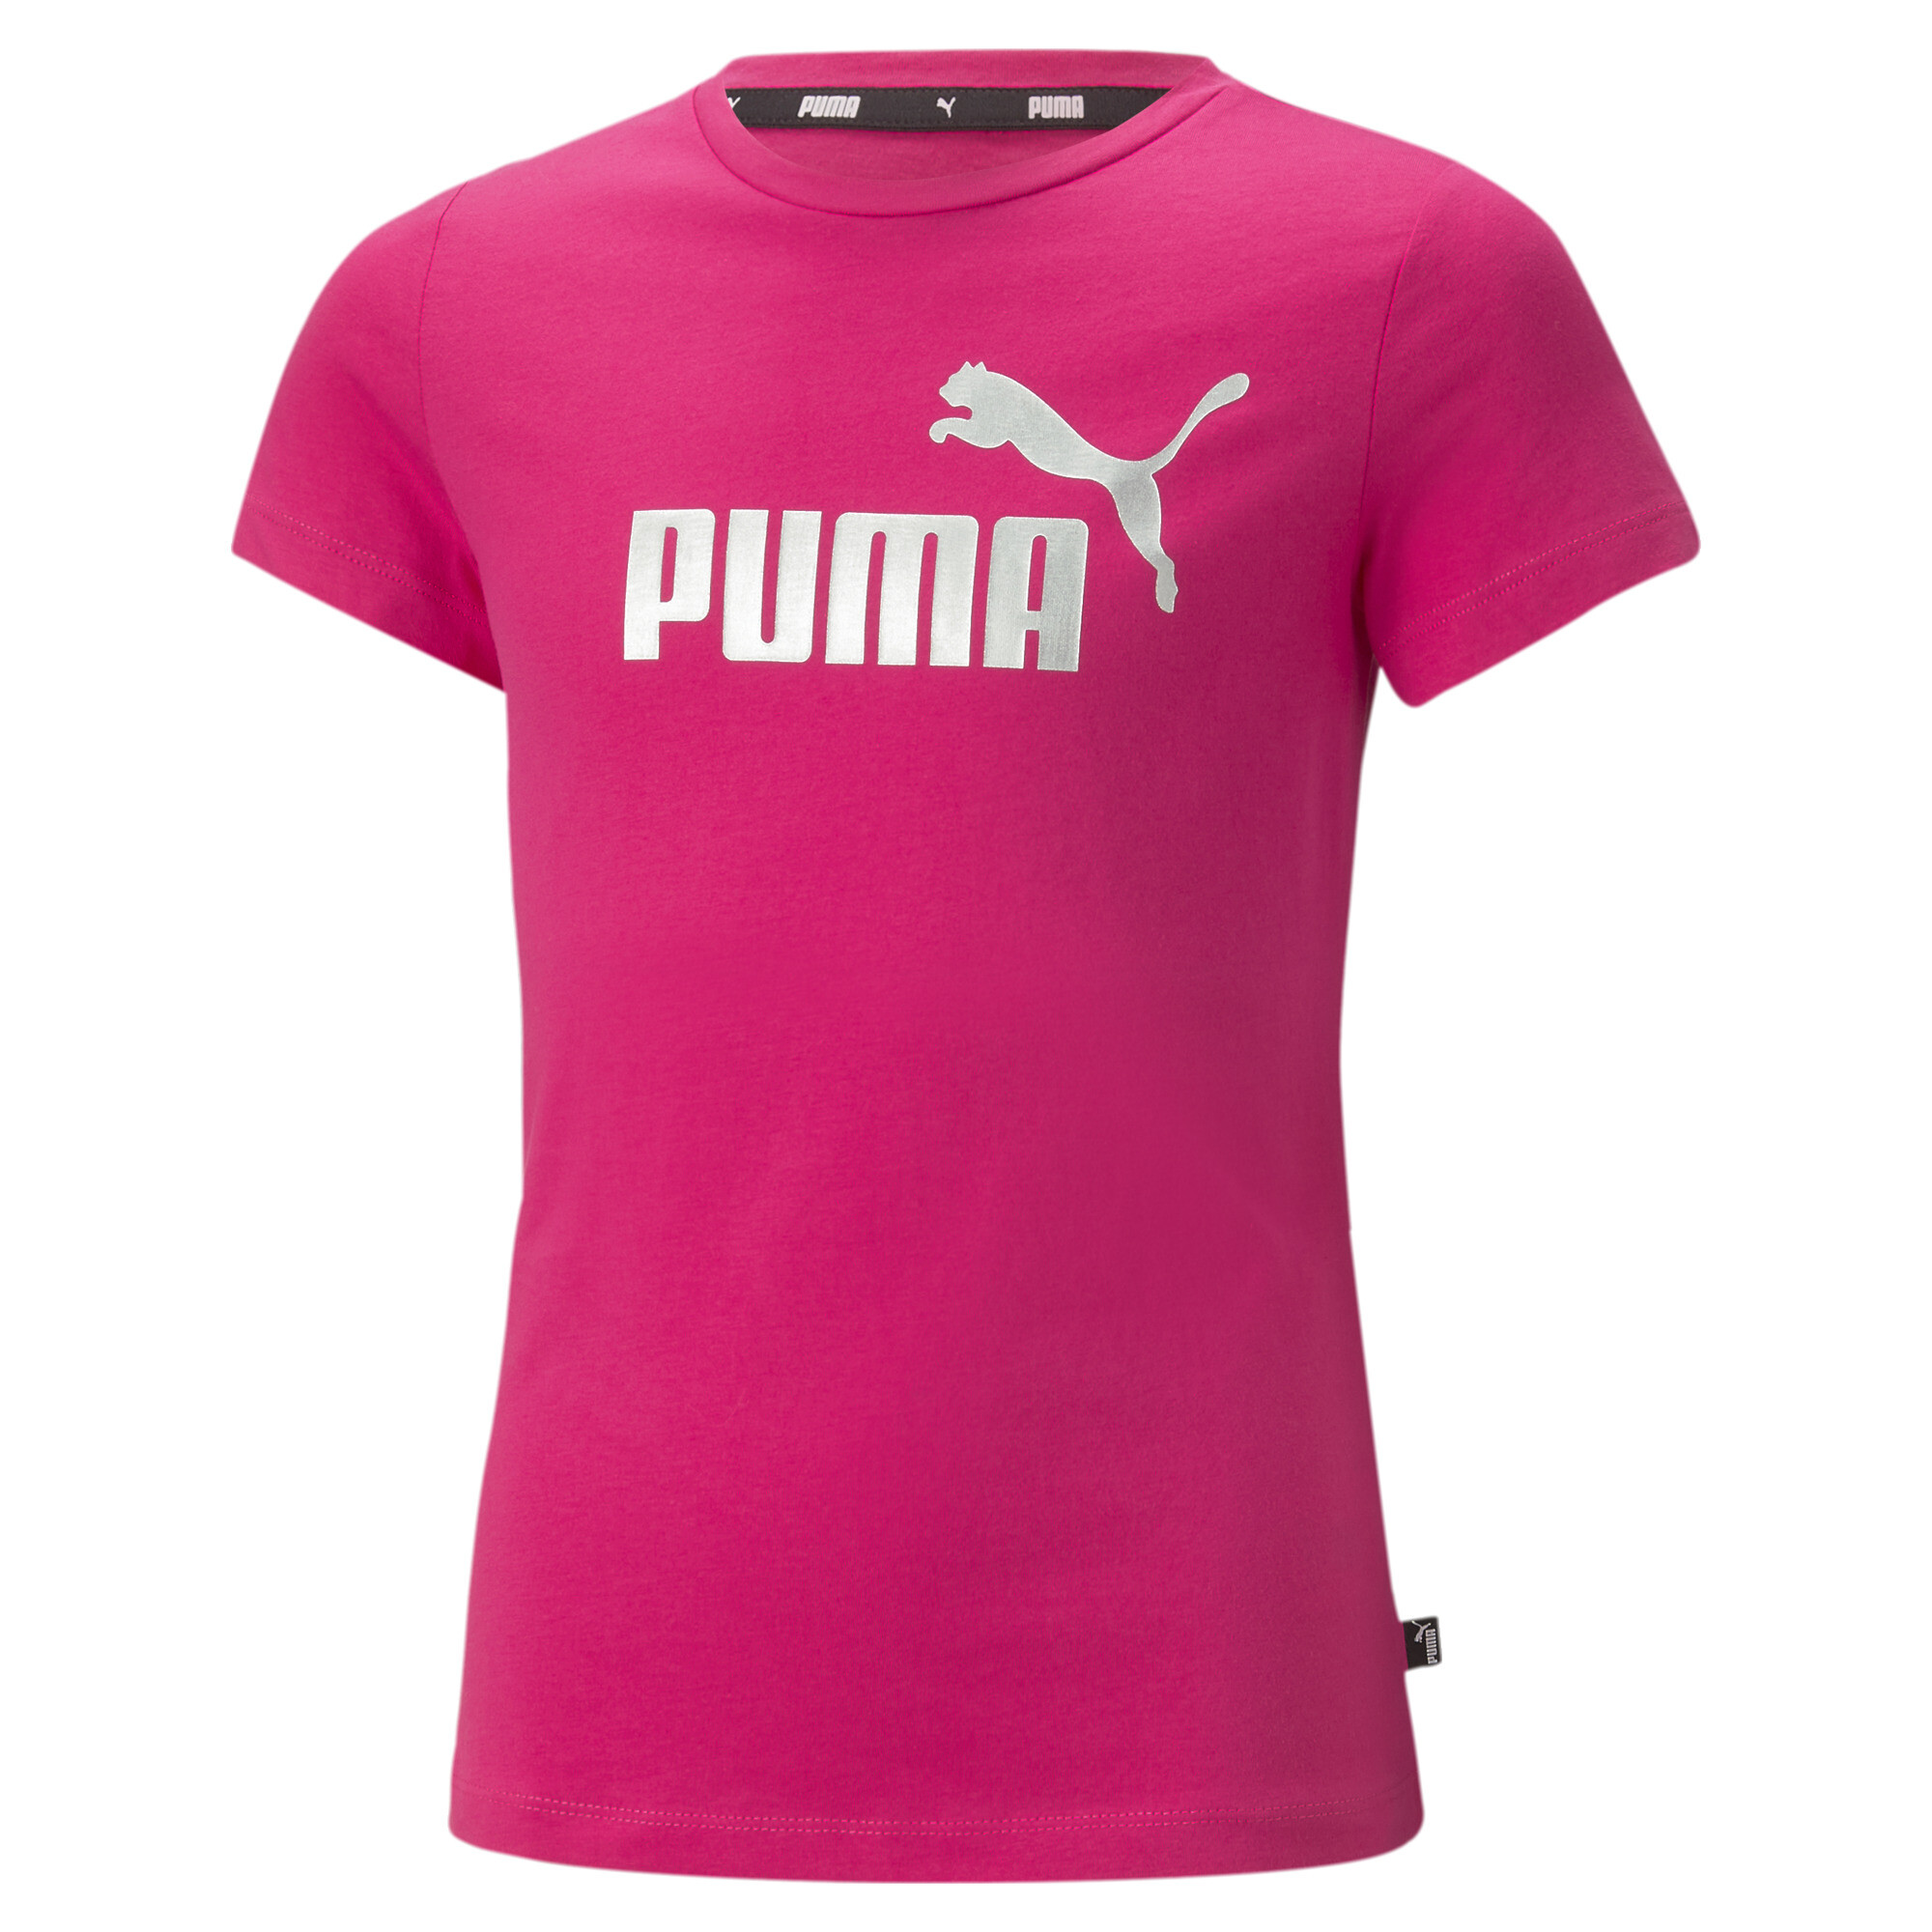 Puma Essentials+ Logo Youth T-Shirt, Pink, Size 13-14Y, Age